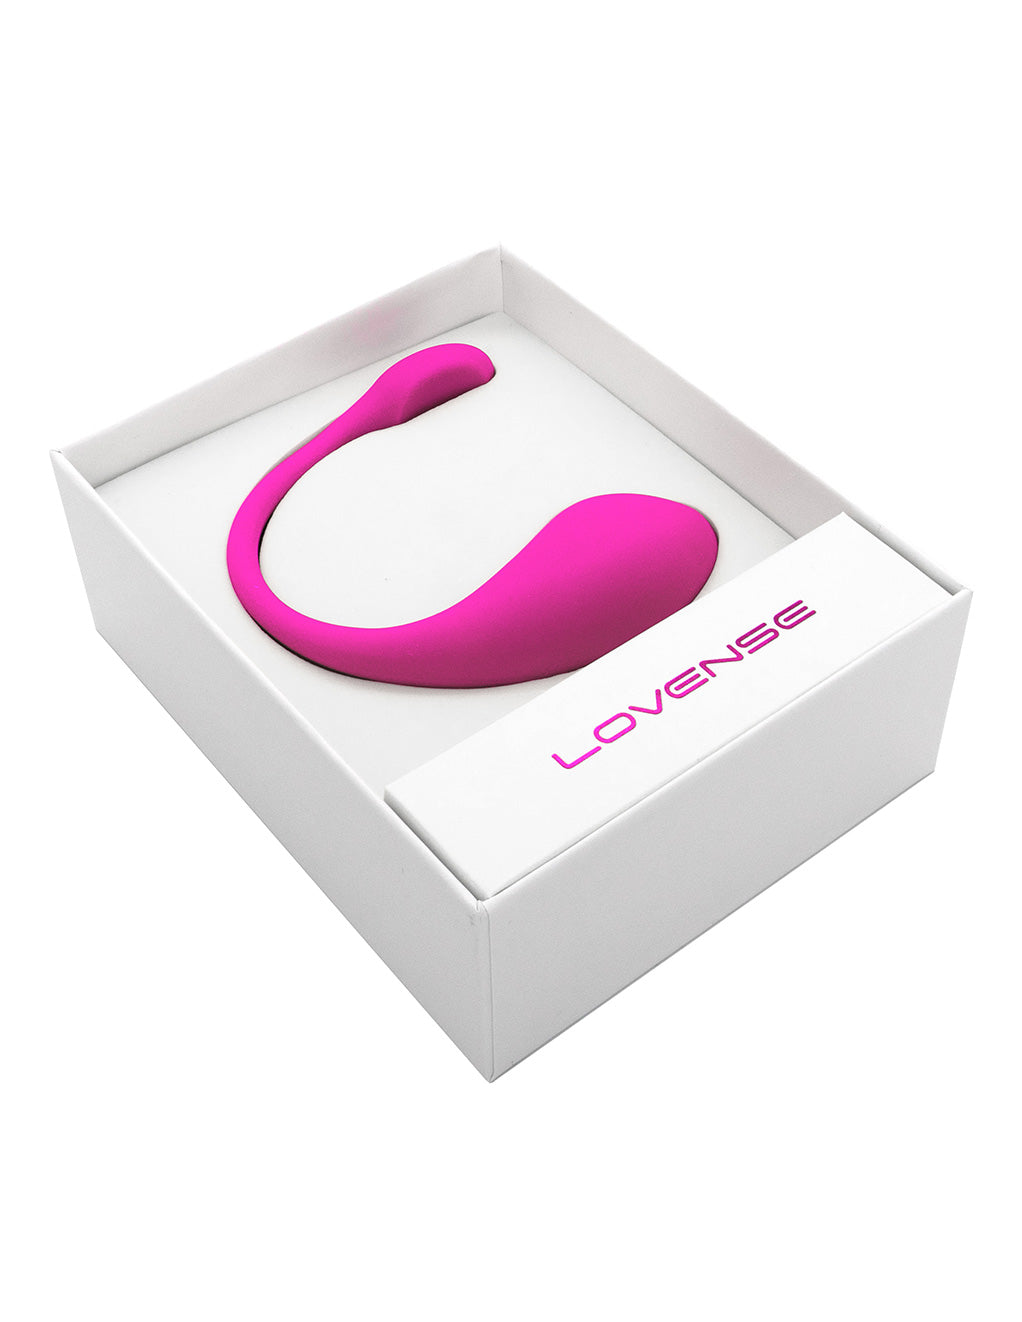 Lovense Lush 2 Bluetooth Remote Control Vibrator- In box